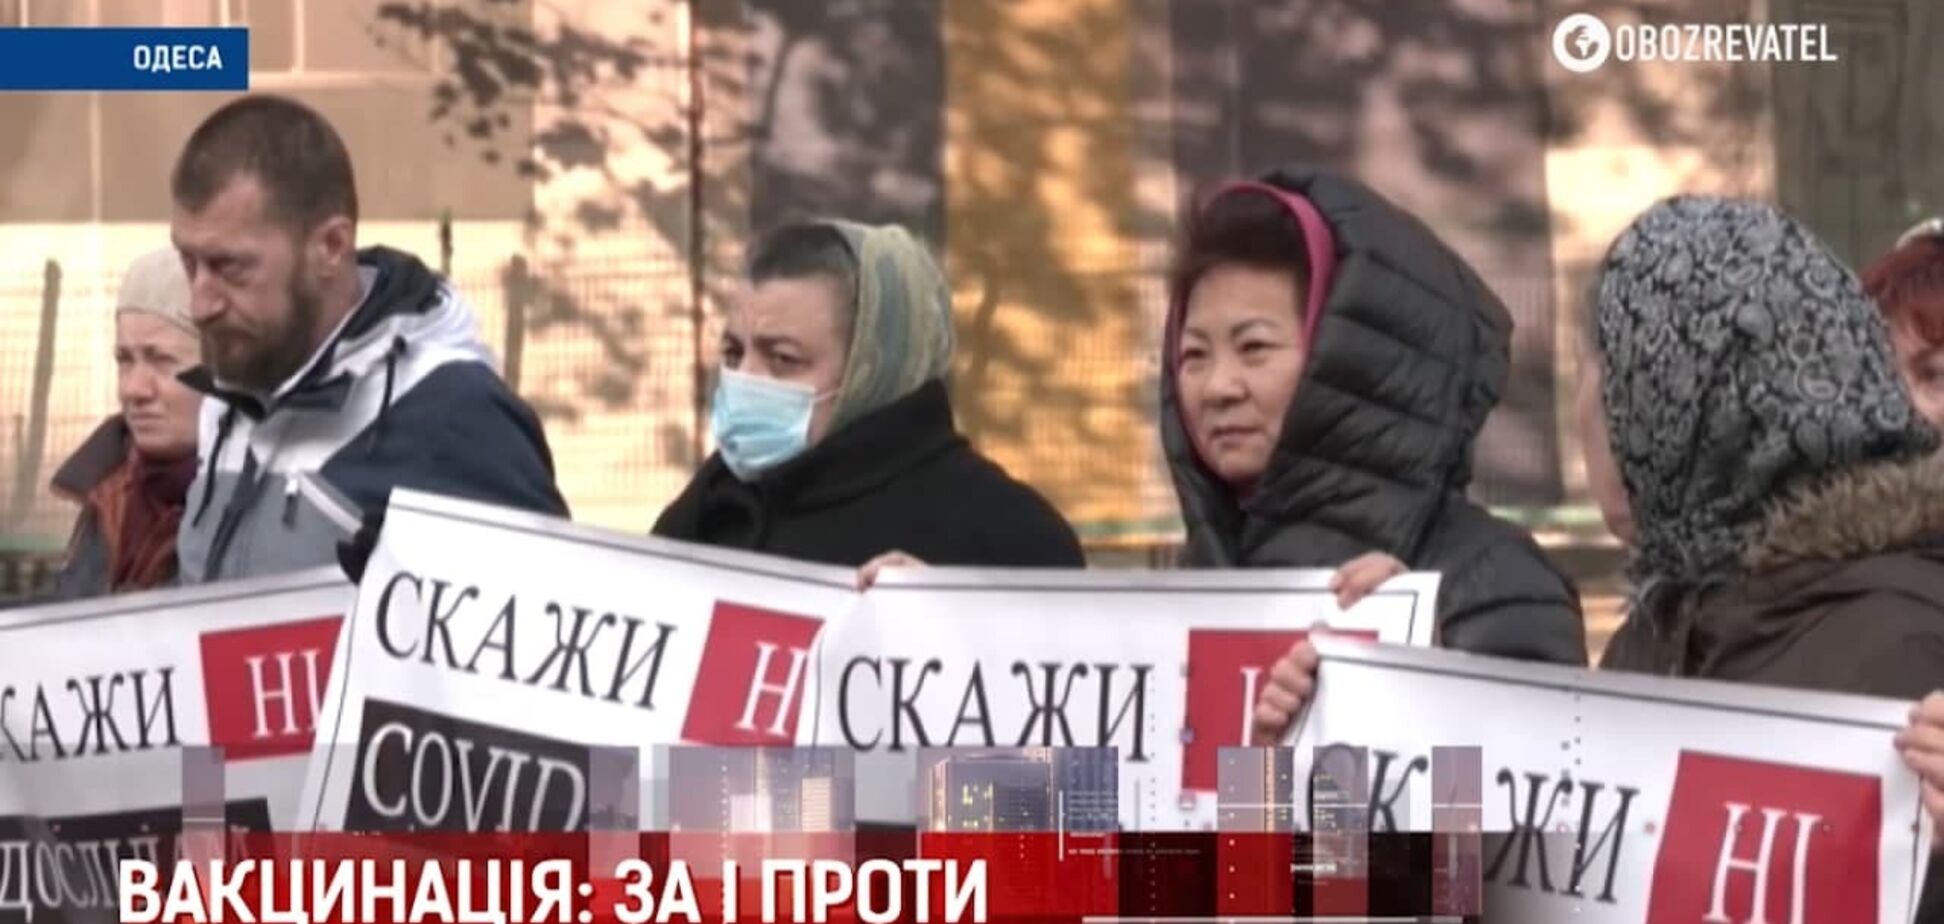 Митинг антивакцинаторов в Киеве: перекрыты дороги и зарубежные организаторы